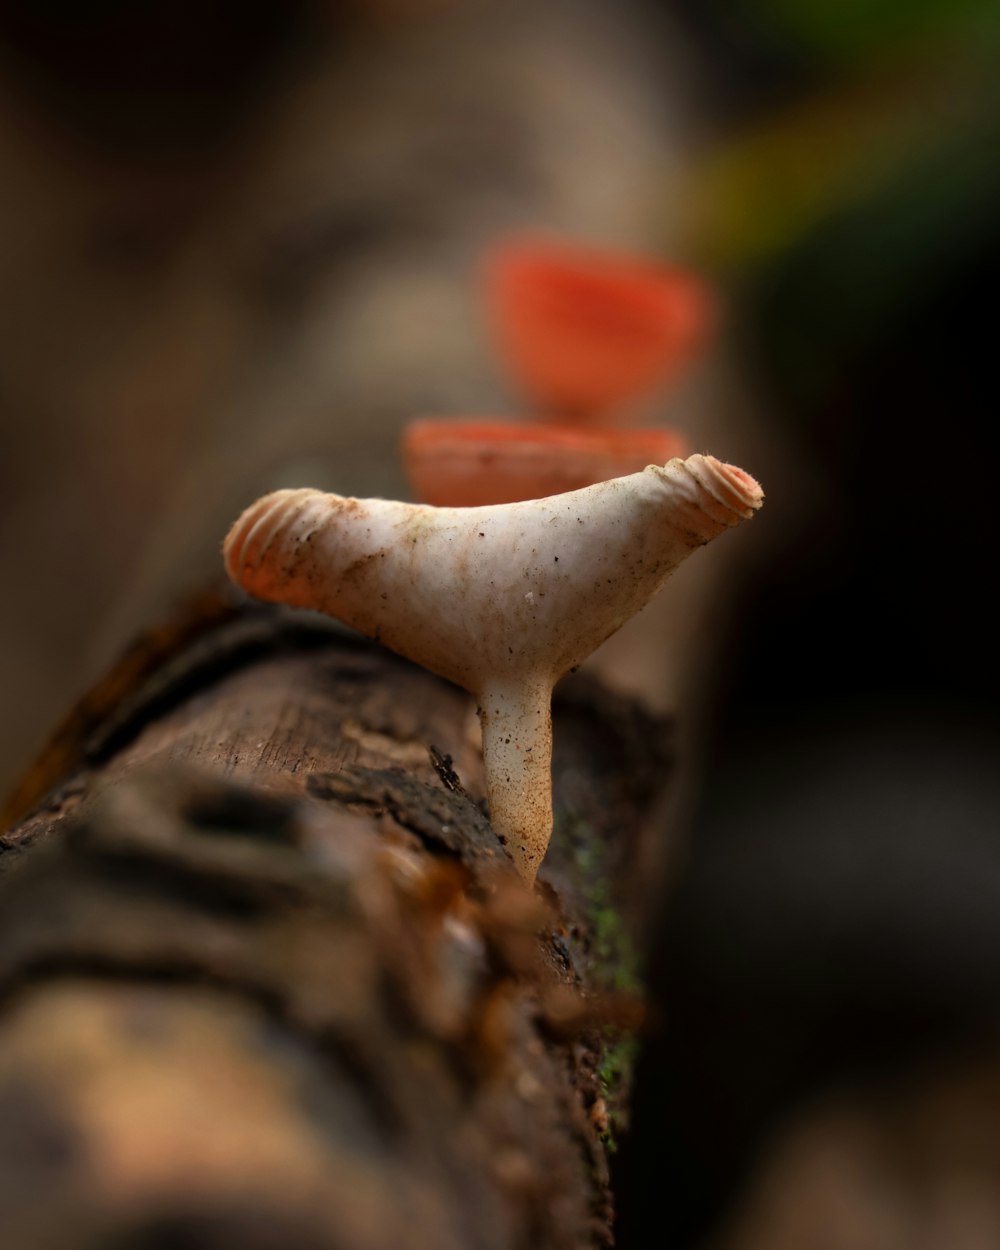 a close up of a mushroom on a log